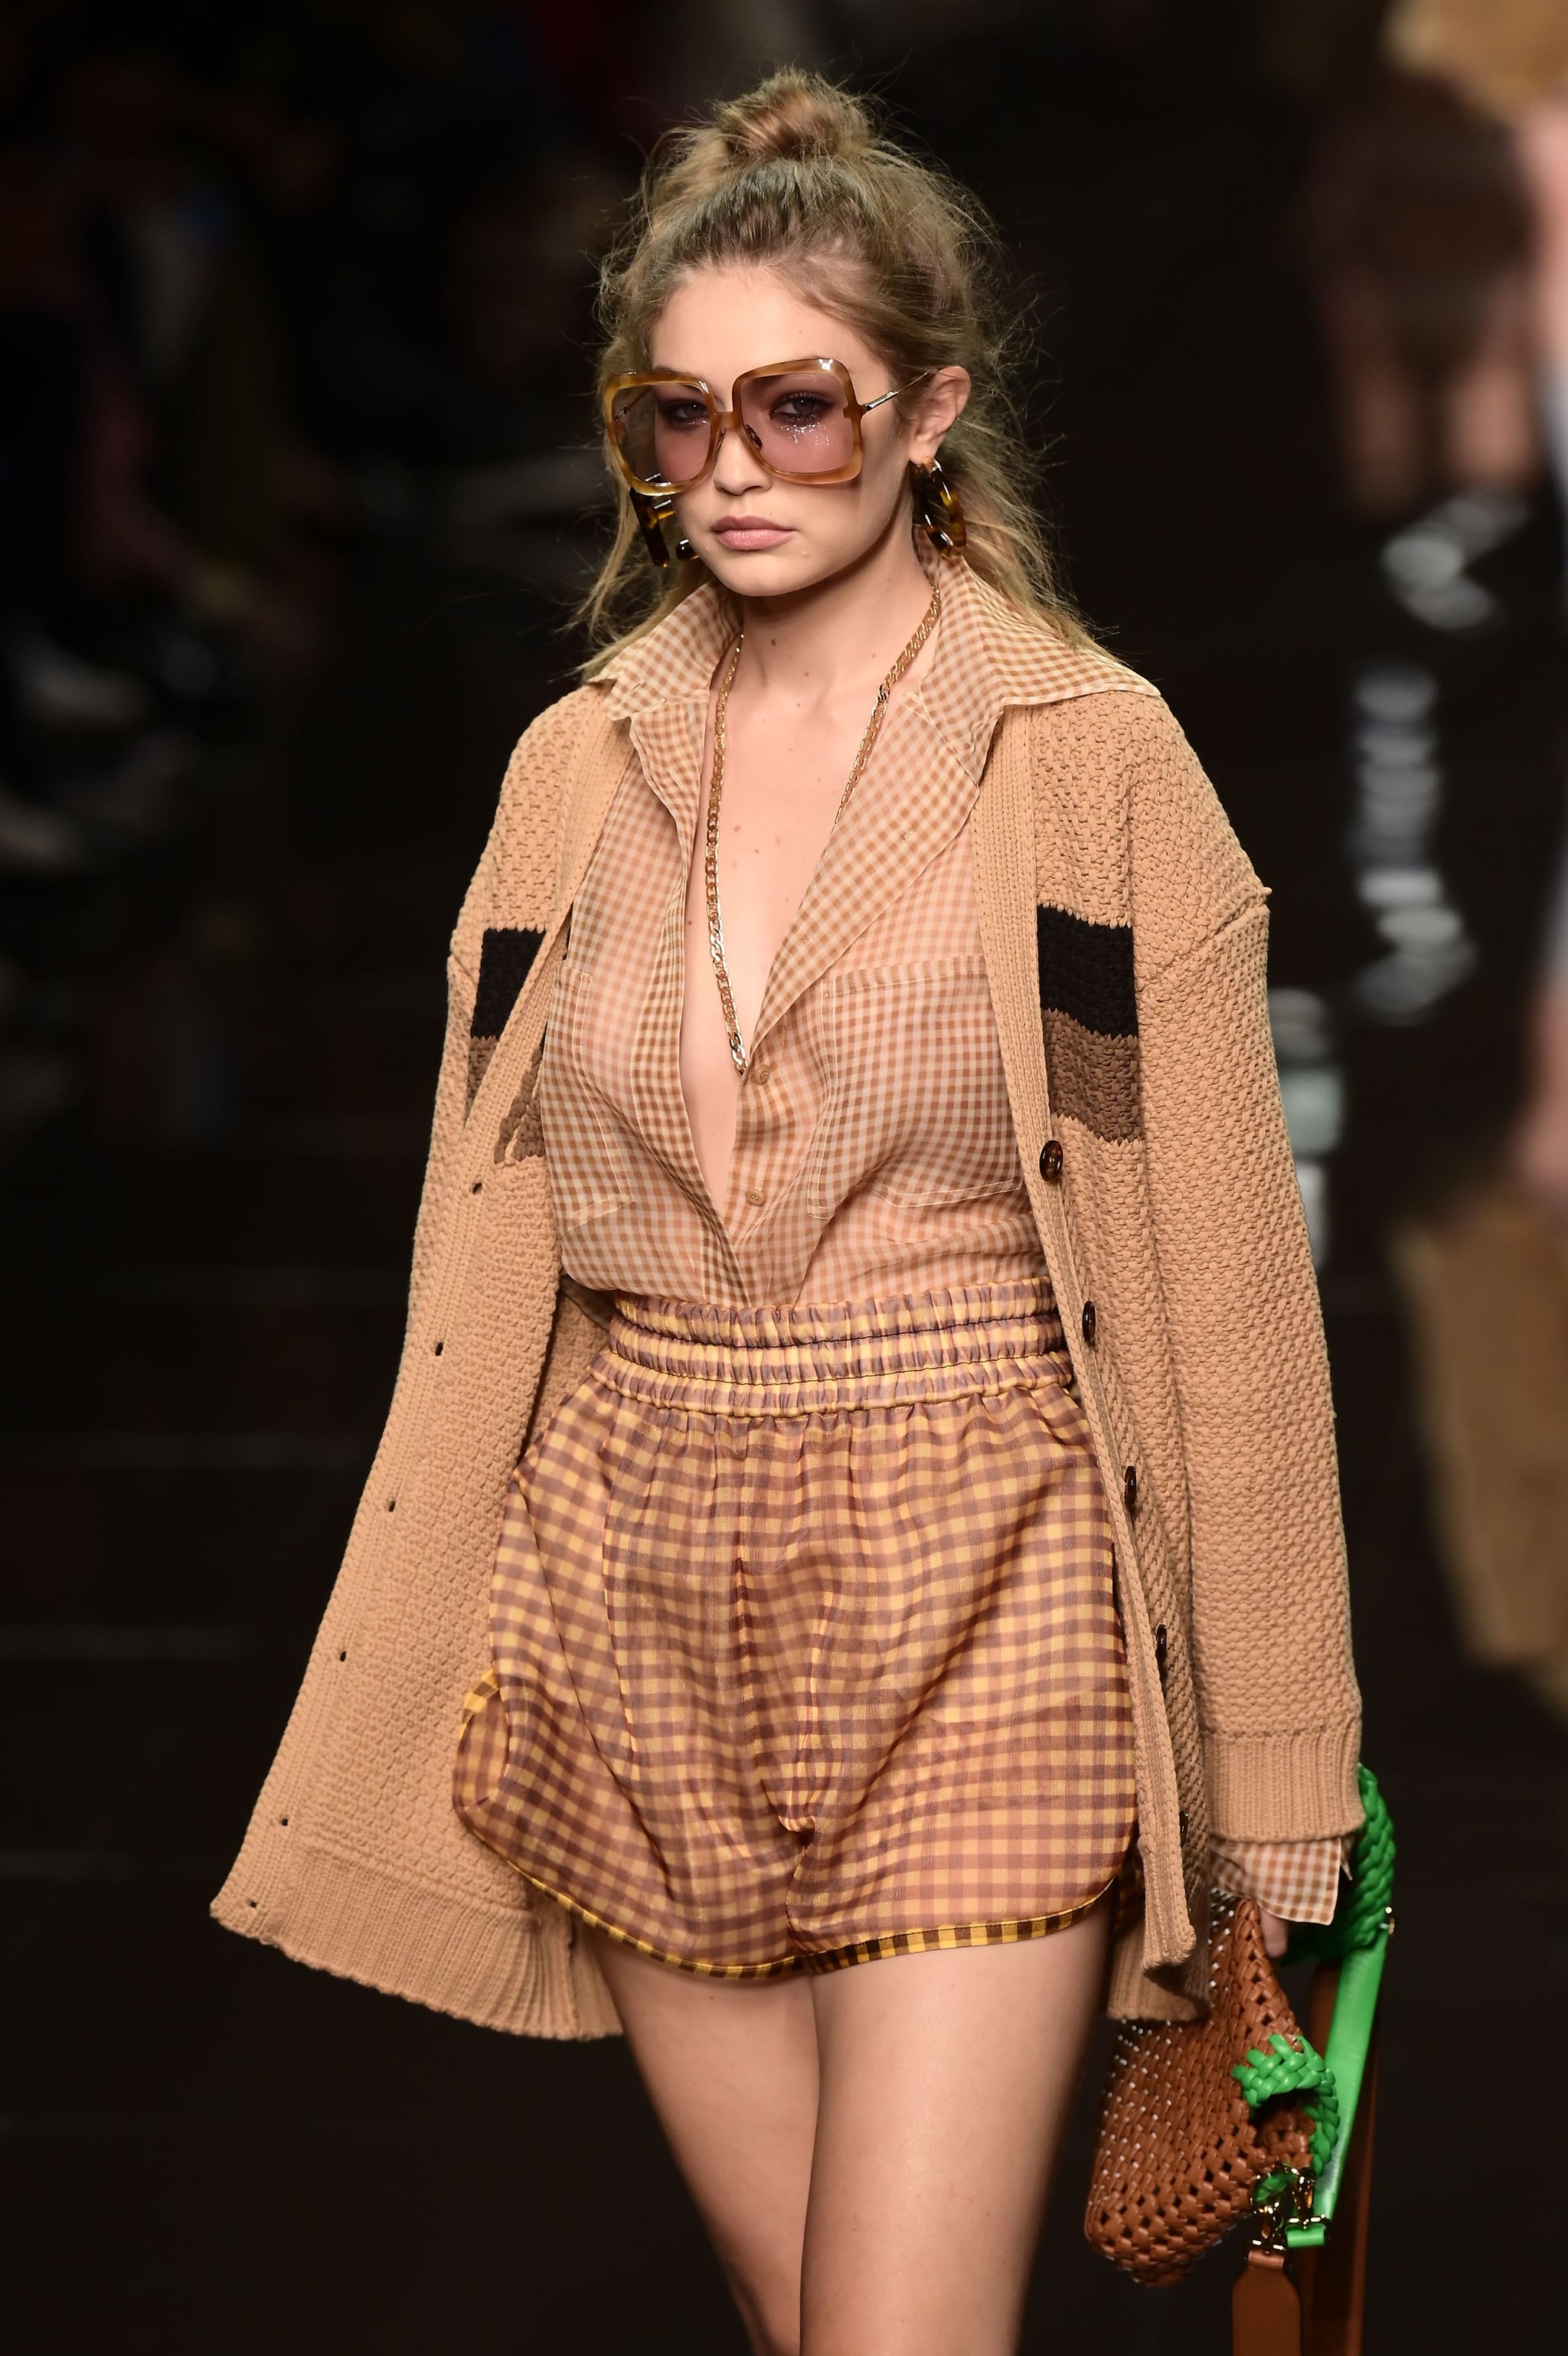 Gigi Hadid Wearing Zendaya's Fendi Outfit During Milan Fashion Week |  Zendaya Wore a 